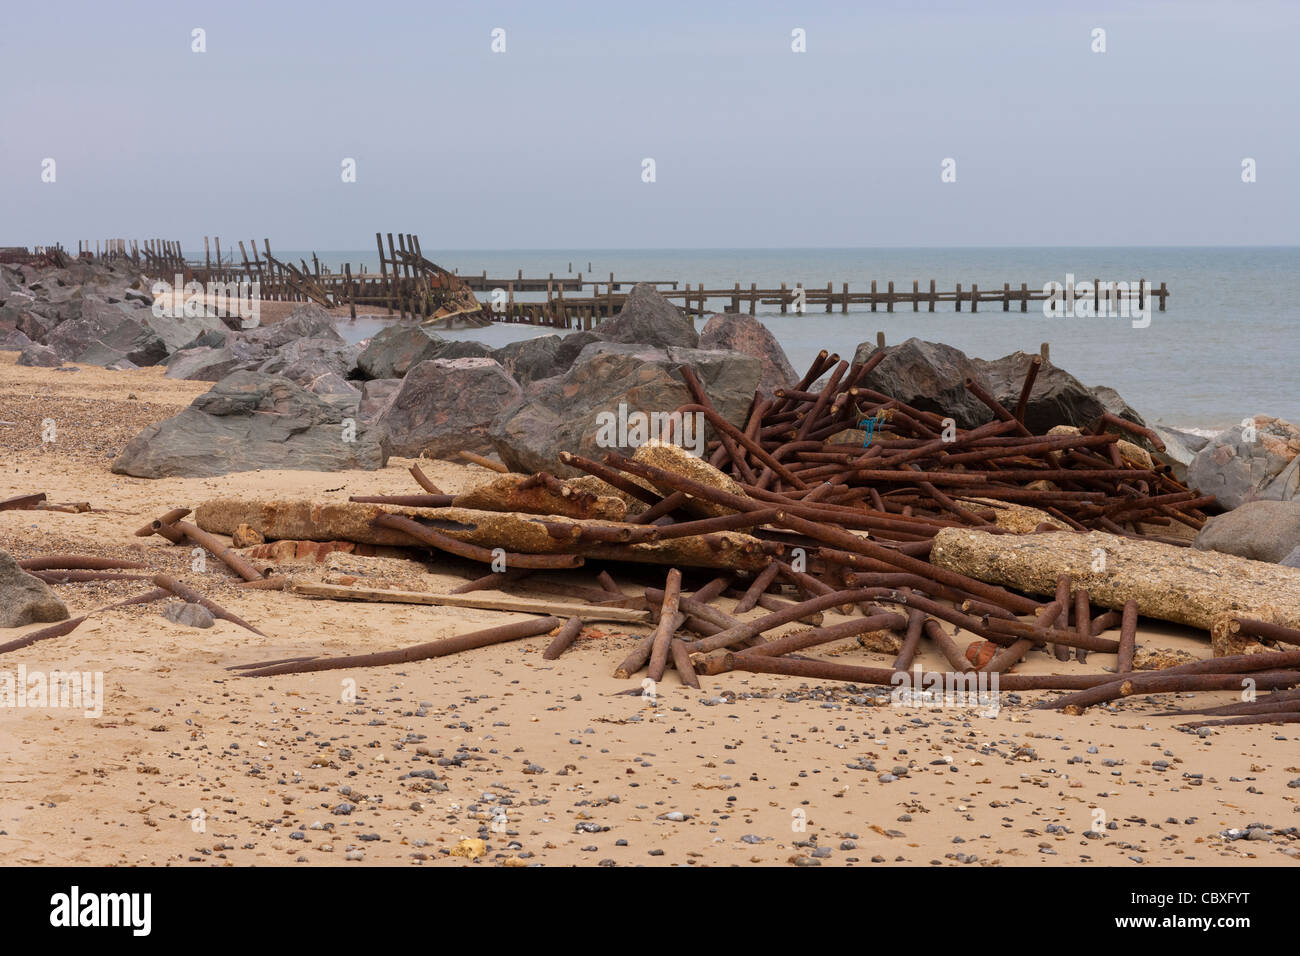 Happisburgh beach et le littoral, dans le Norfolk. Brakewaters métal détruit accumulés et roches importées comme la défense de la mer Banque D'Images